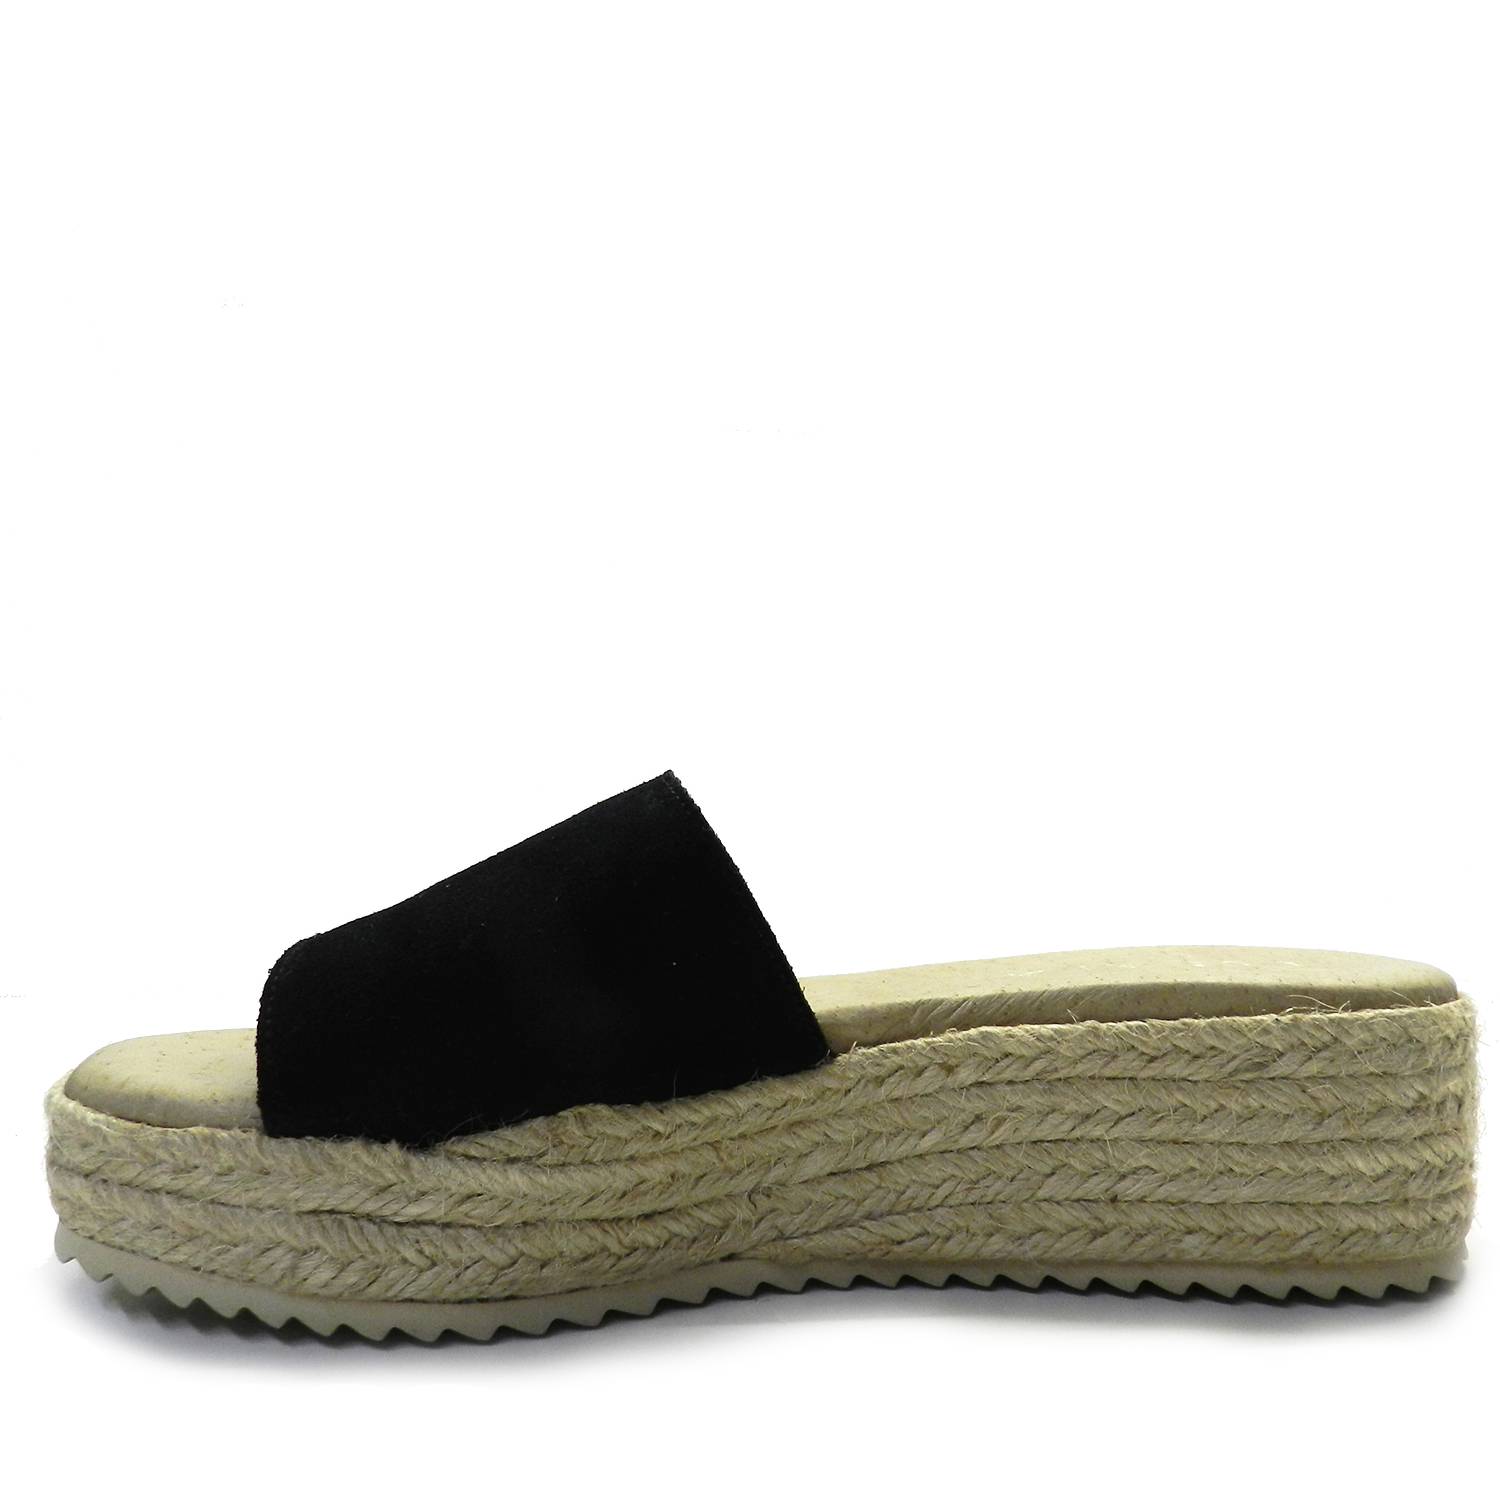 Sandalia de la marca Escala modelo Bekasi en color negro. Sandalia de plataforma de esparto con pala ancha de piel de ante, suela de goma antideslizante.